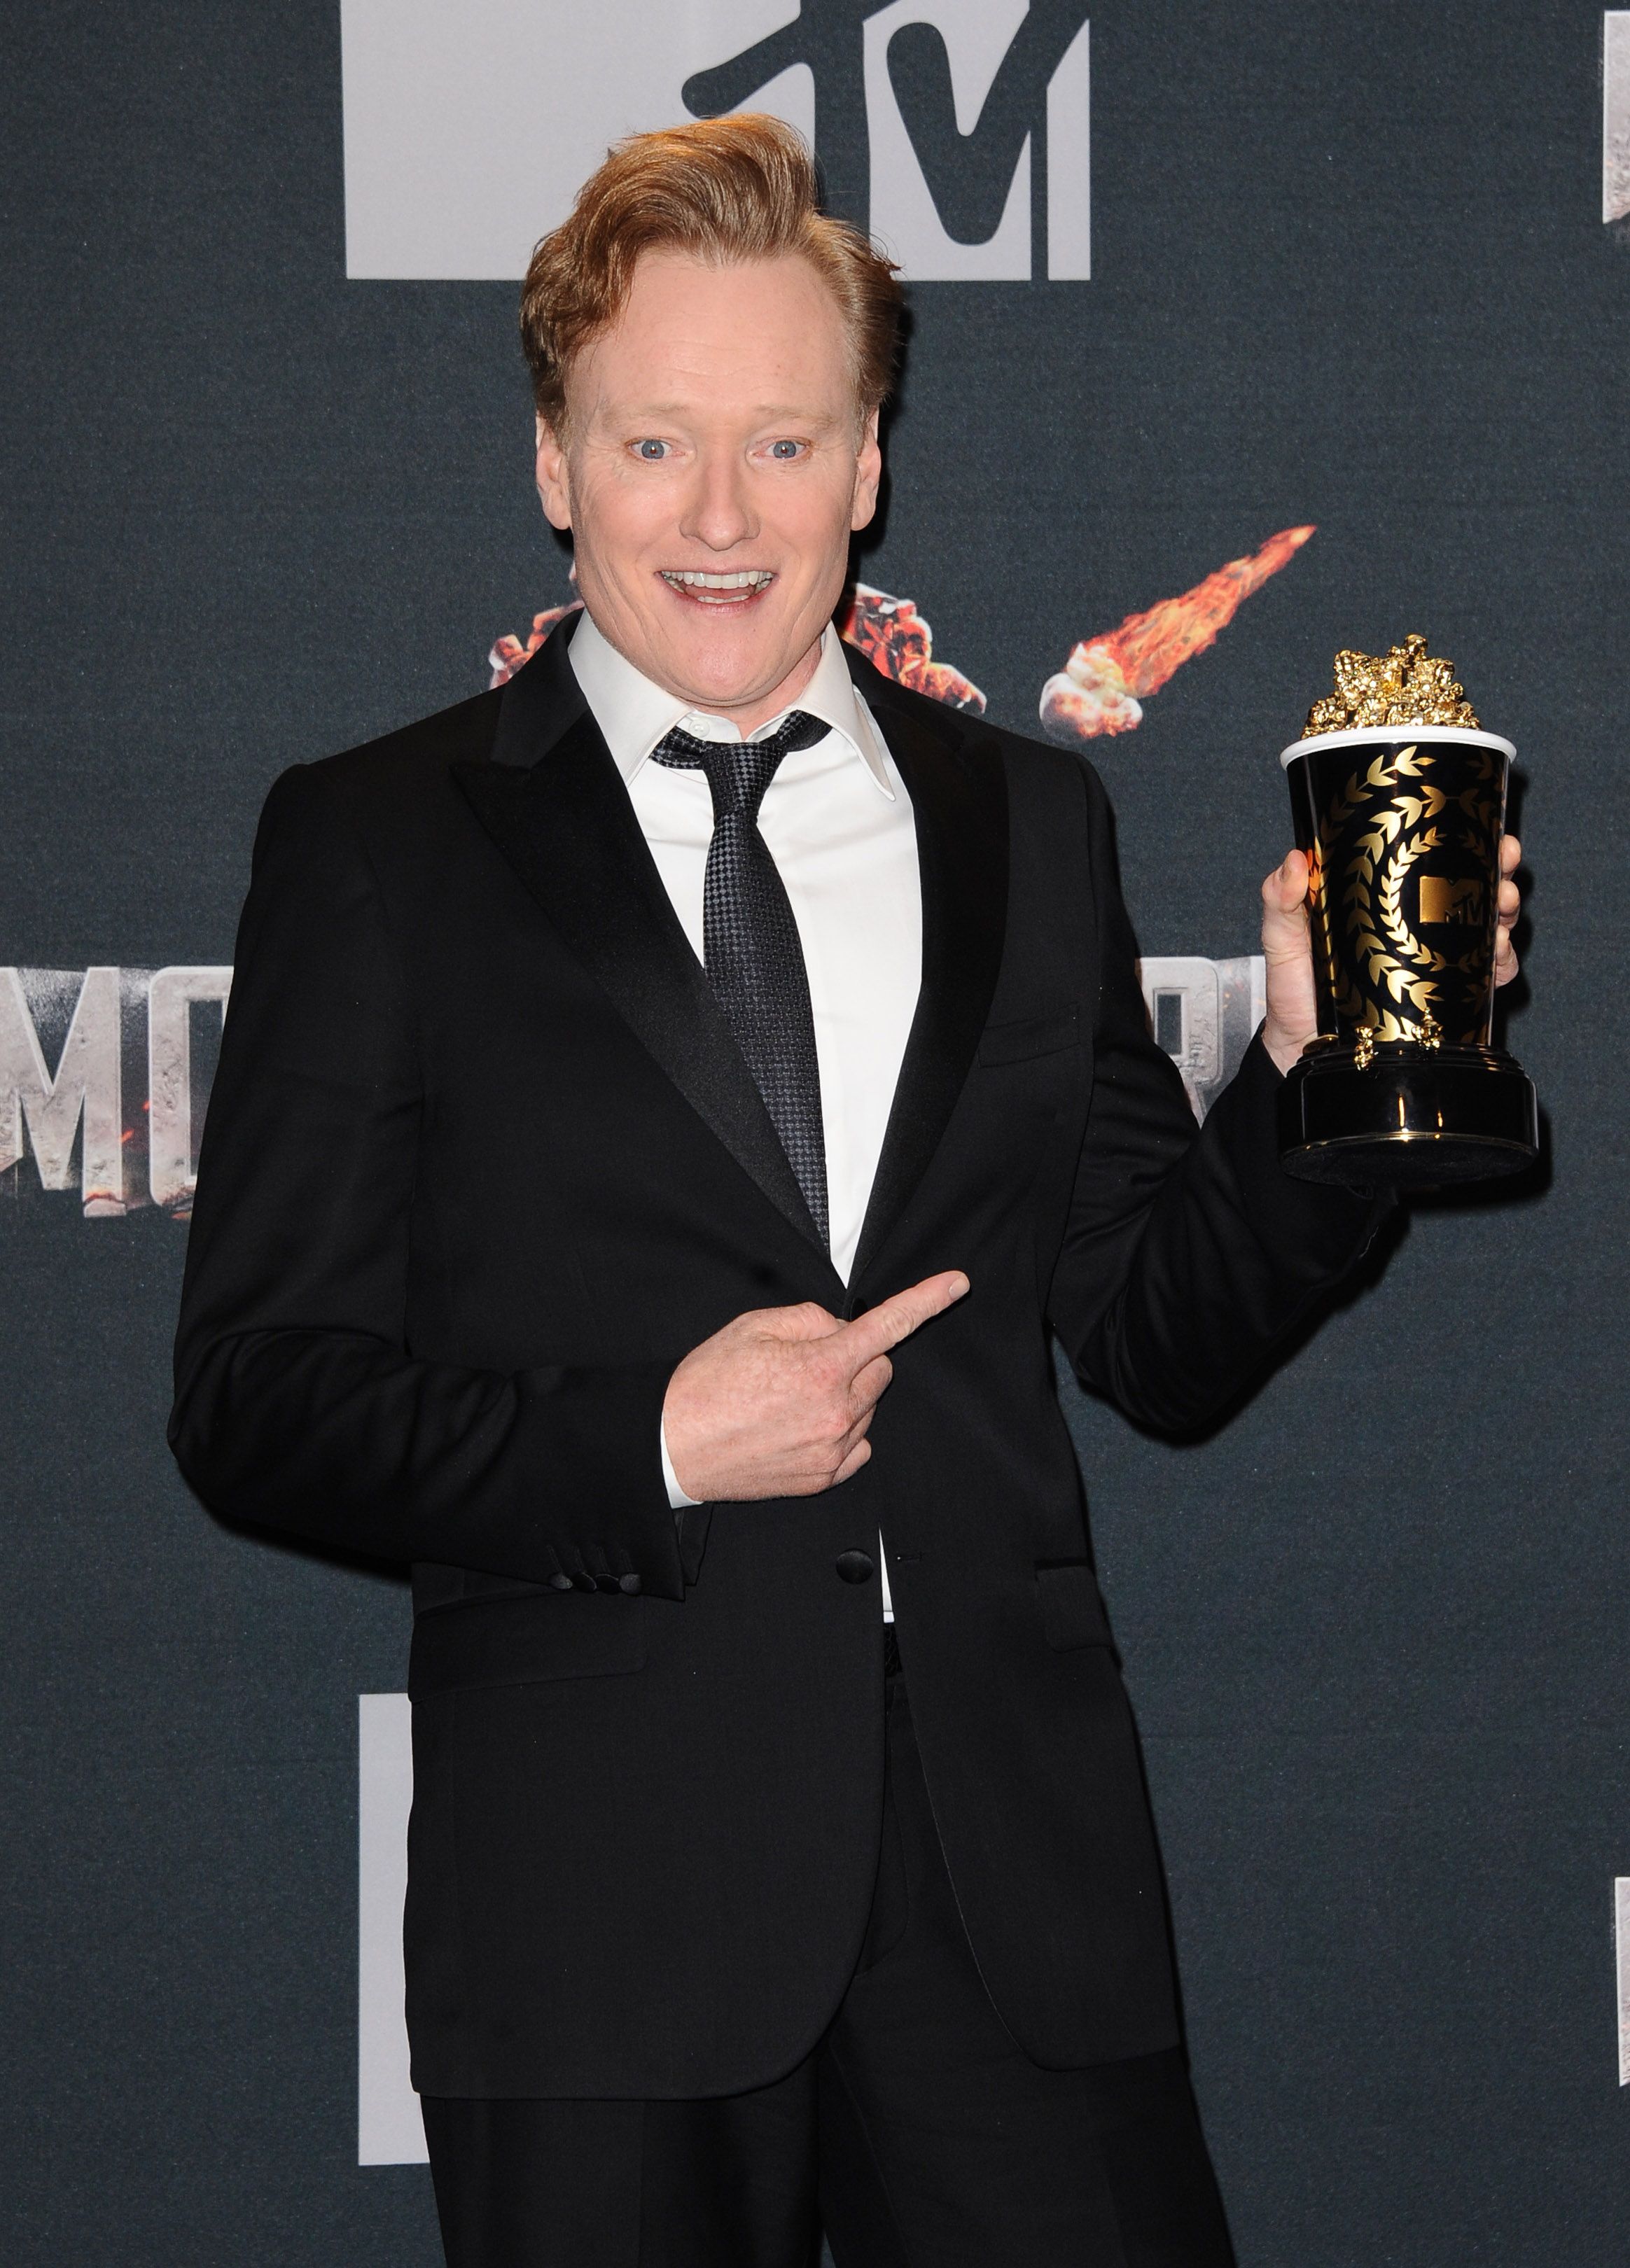 Conan O'Brien at The 2014 MTV Movie Awards